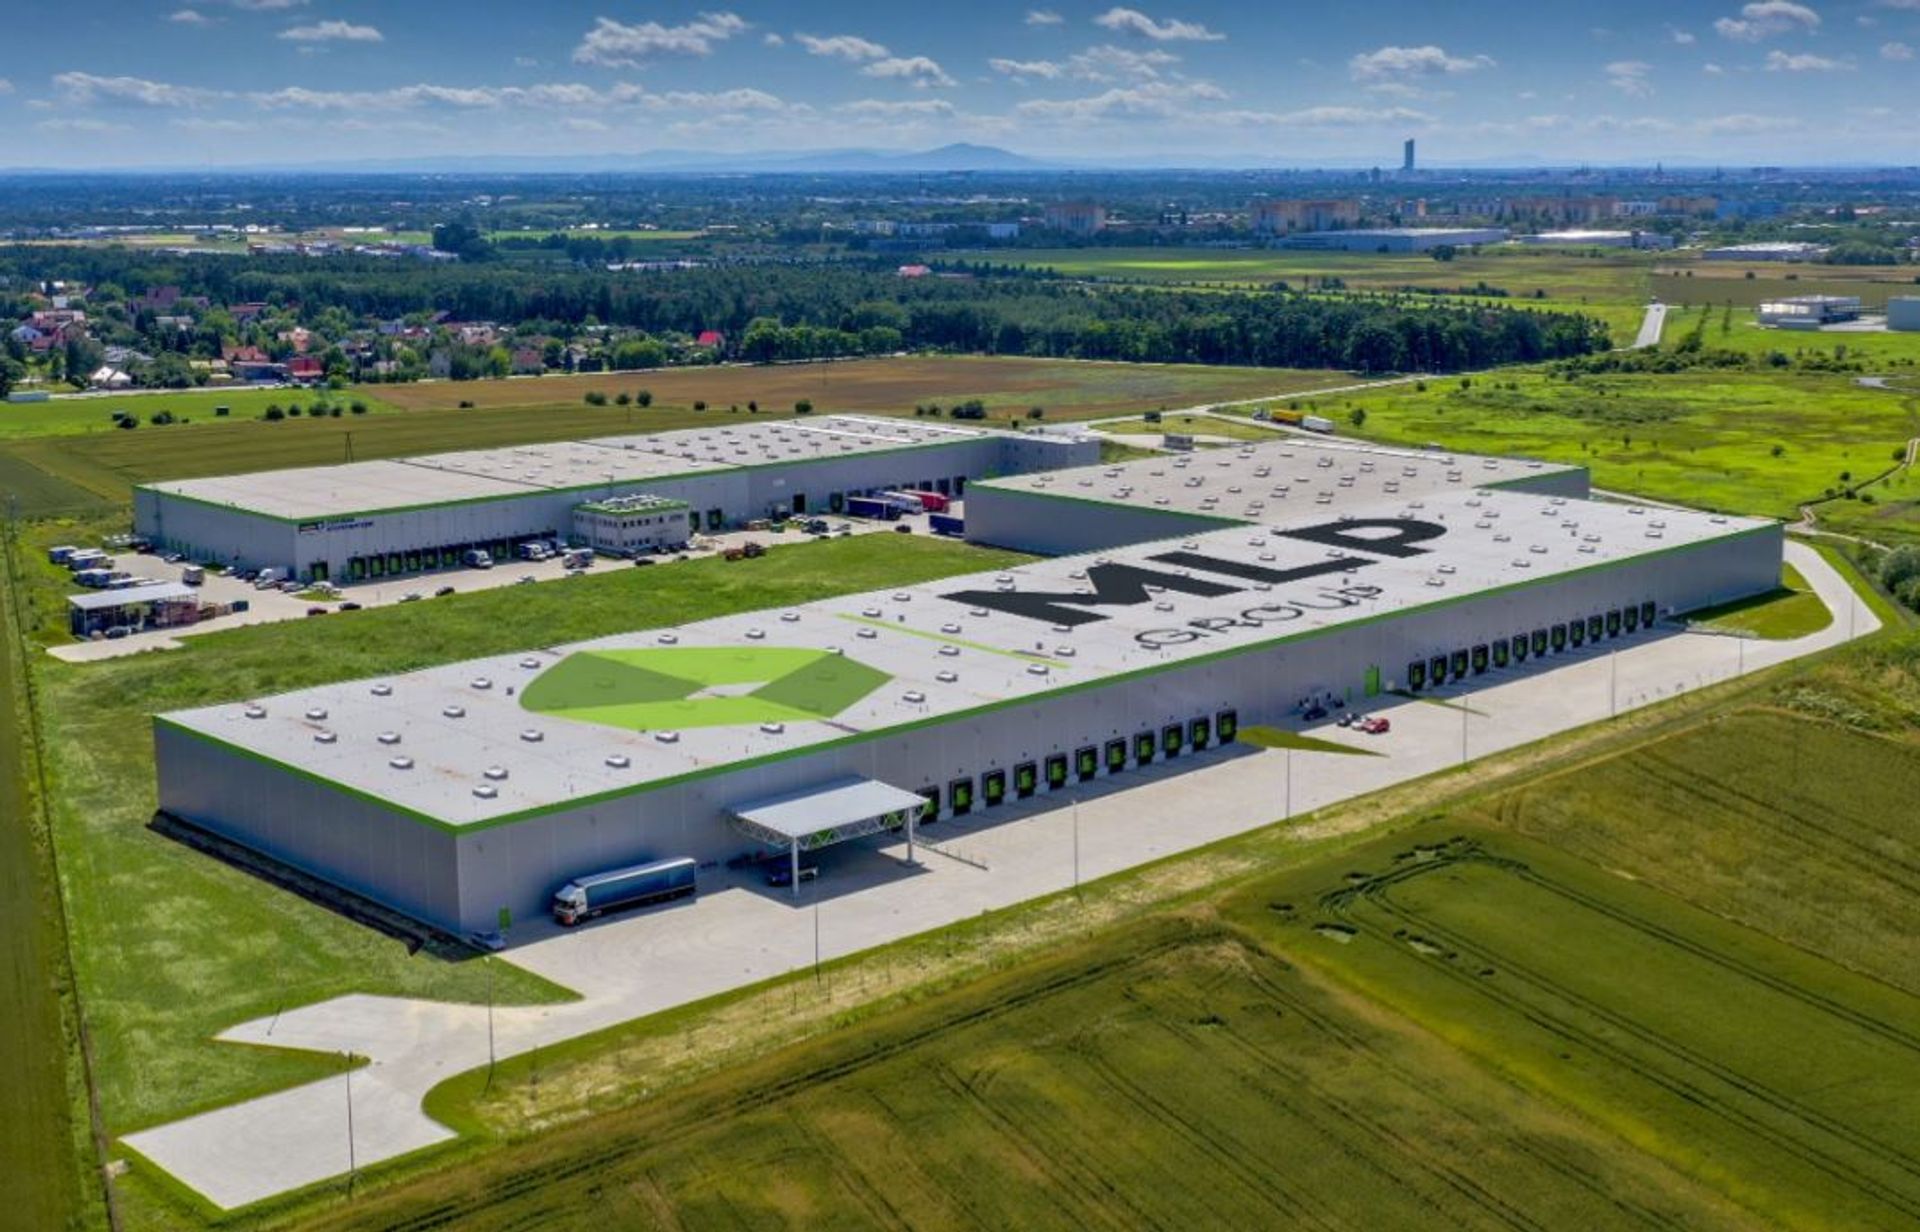 Siemens zwiększy zatrudnienie w fabryce szaf sterowniczych pod Wrocławiem